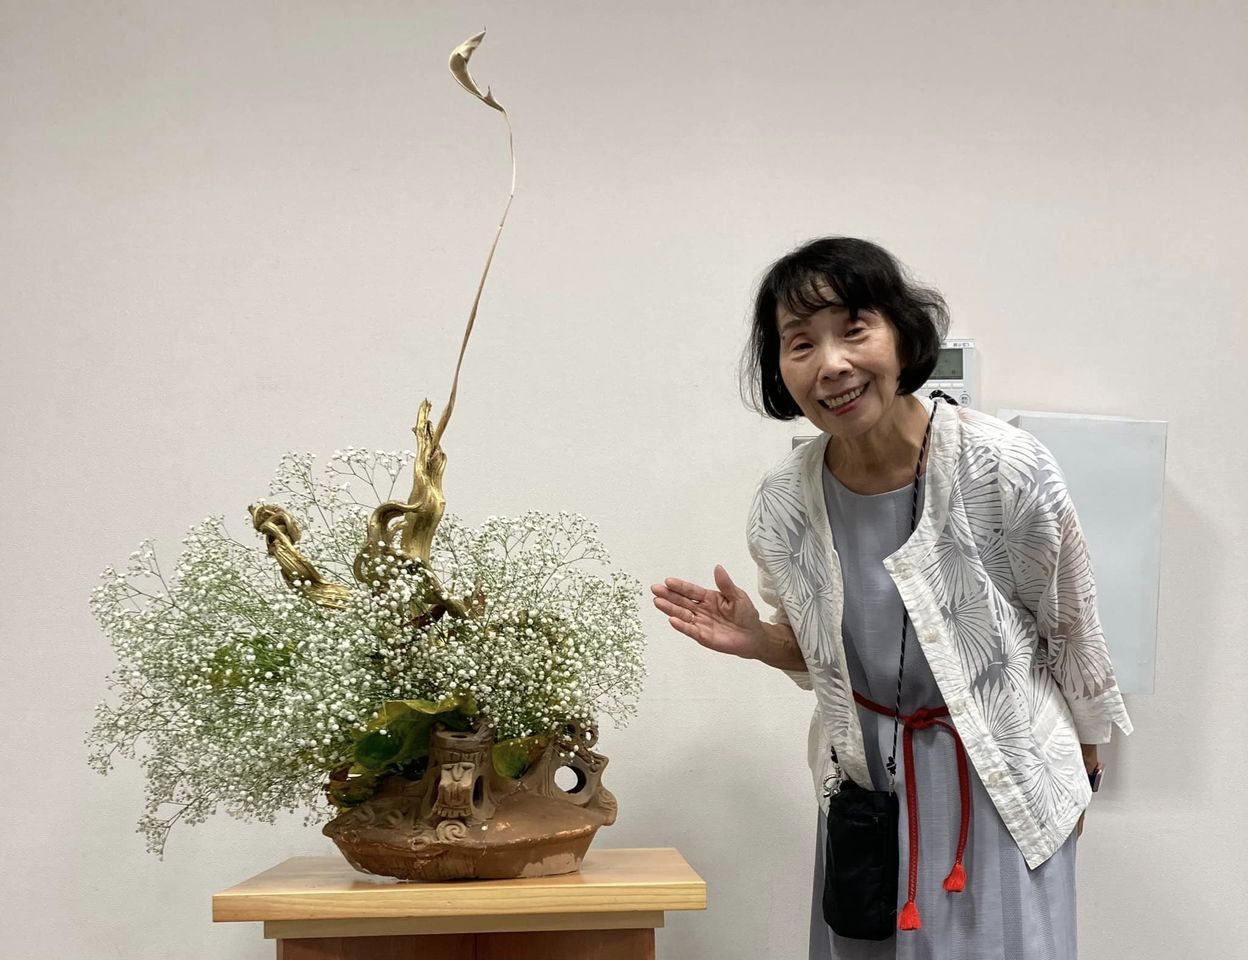 三鷹市芸術文化協会創立50周年記念合同作品展で縄文式土器にいけた生け花を鑑賞しました。